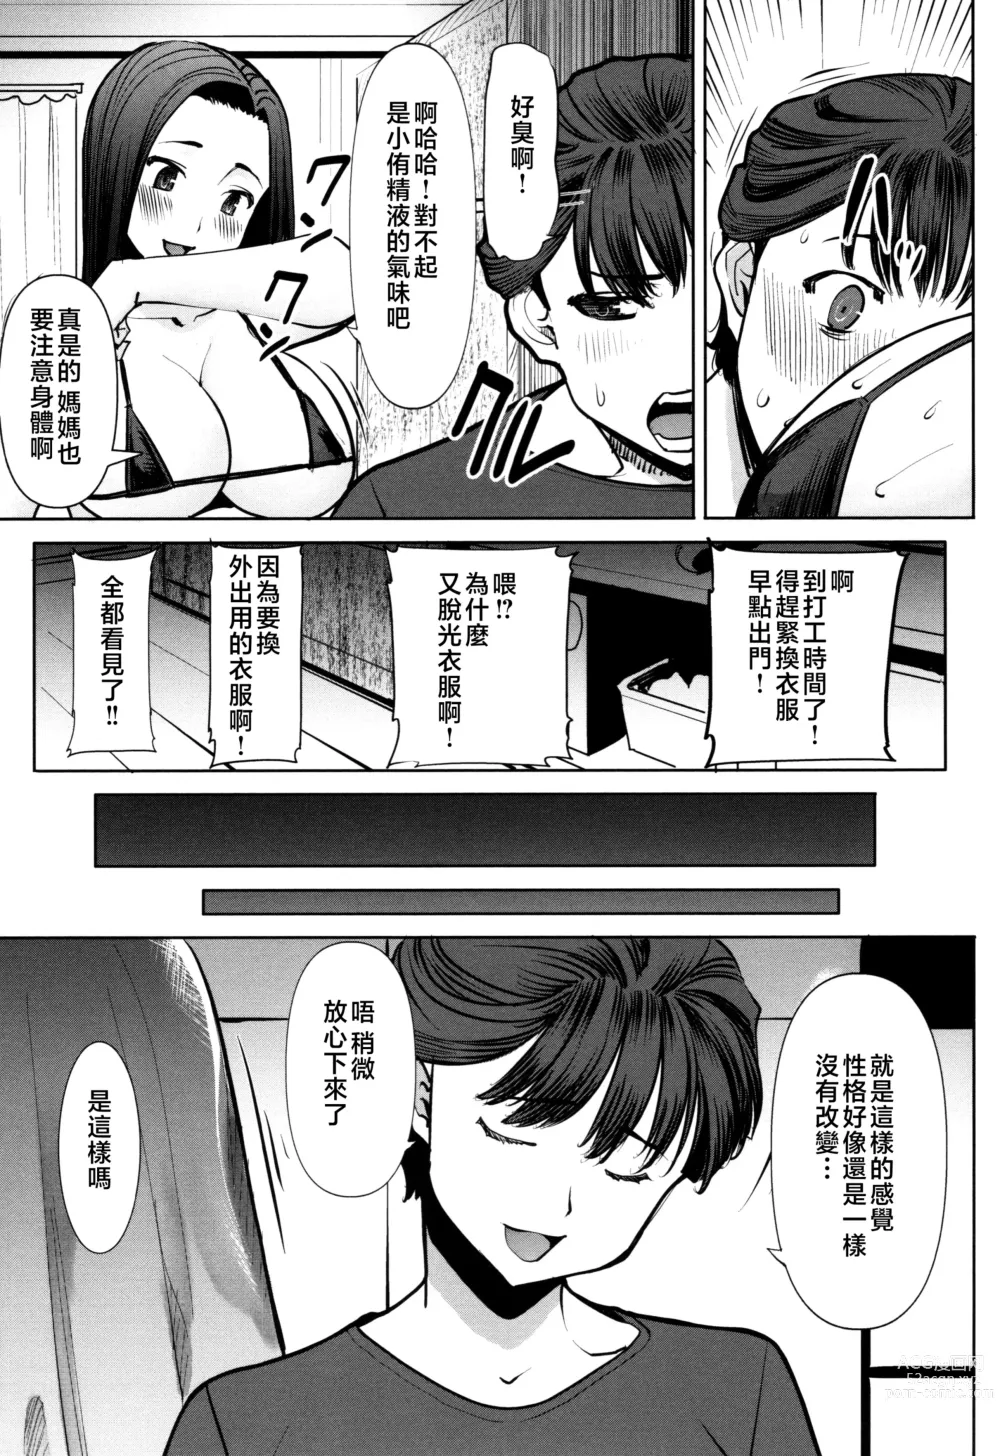 Page 177 of manga Unsweet - Asahina Ikka Netorareta Haha · Tomoko (decensored)